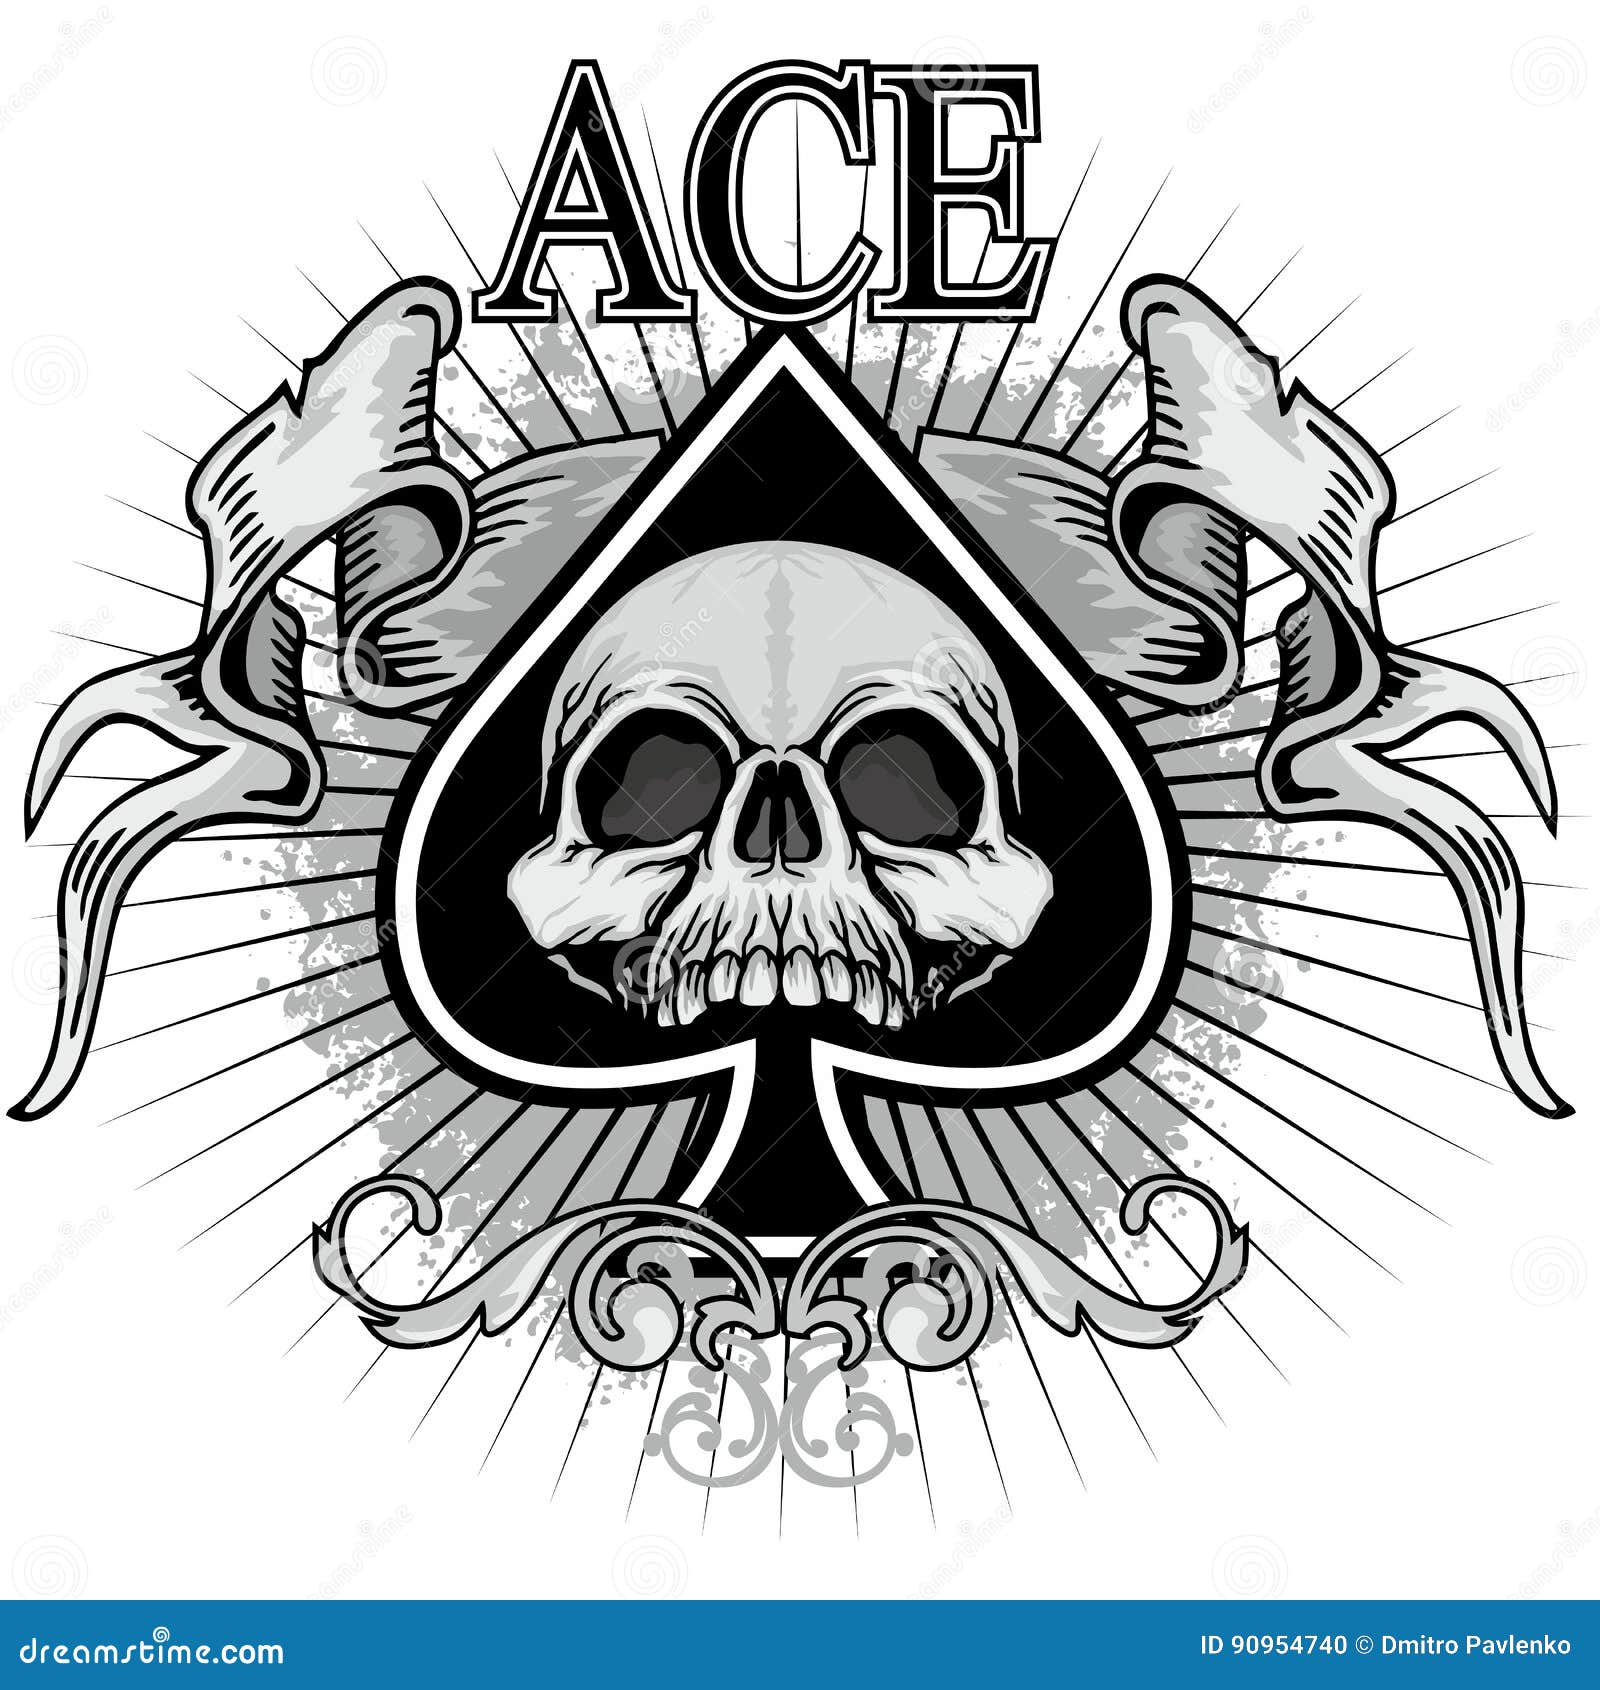 Ace Of Spades Design